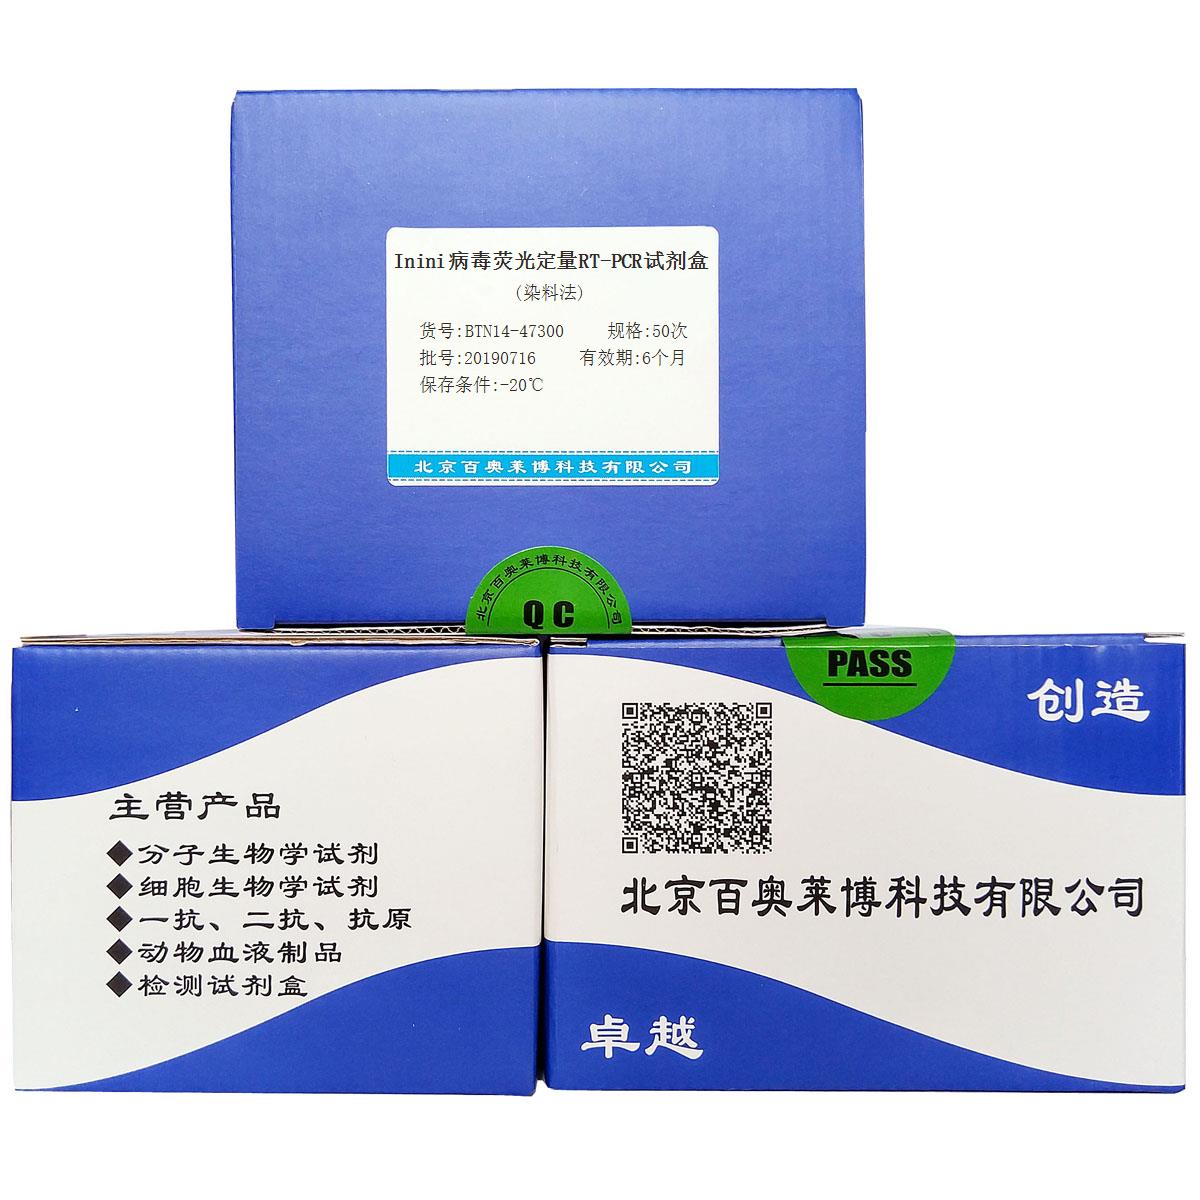 Inini病毒荧光定量RT-PCR试剂盒(染料法)